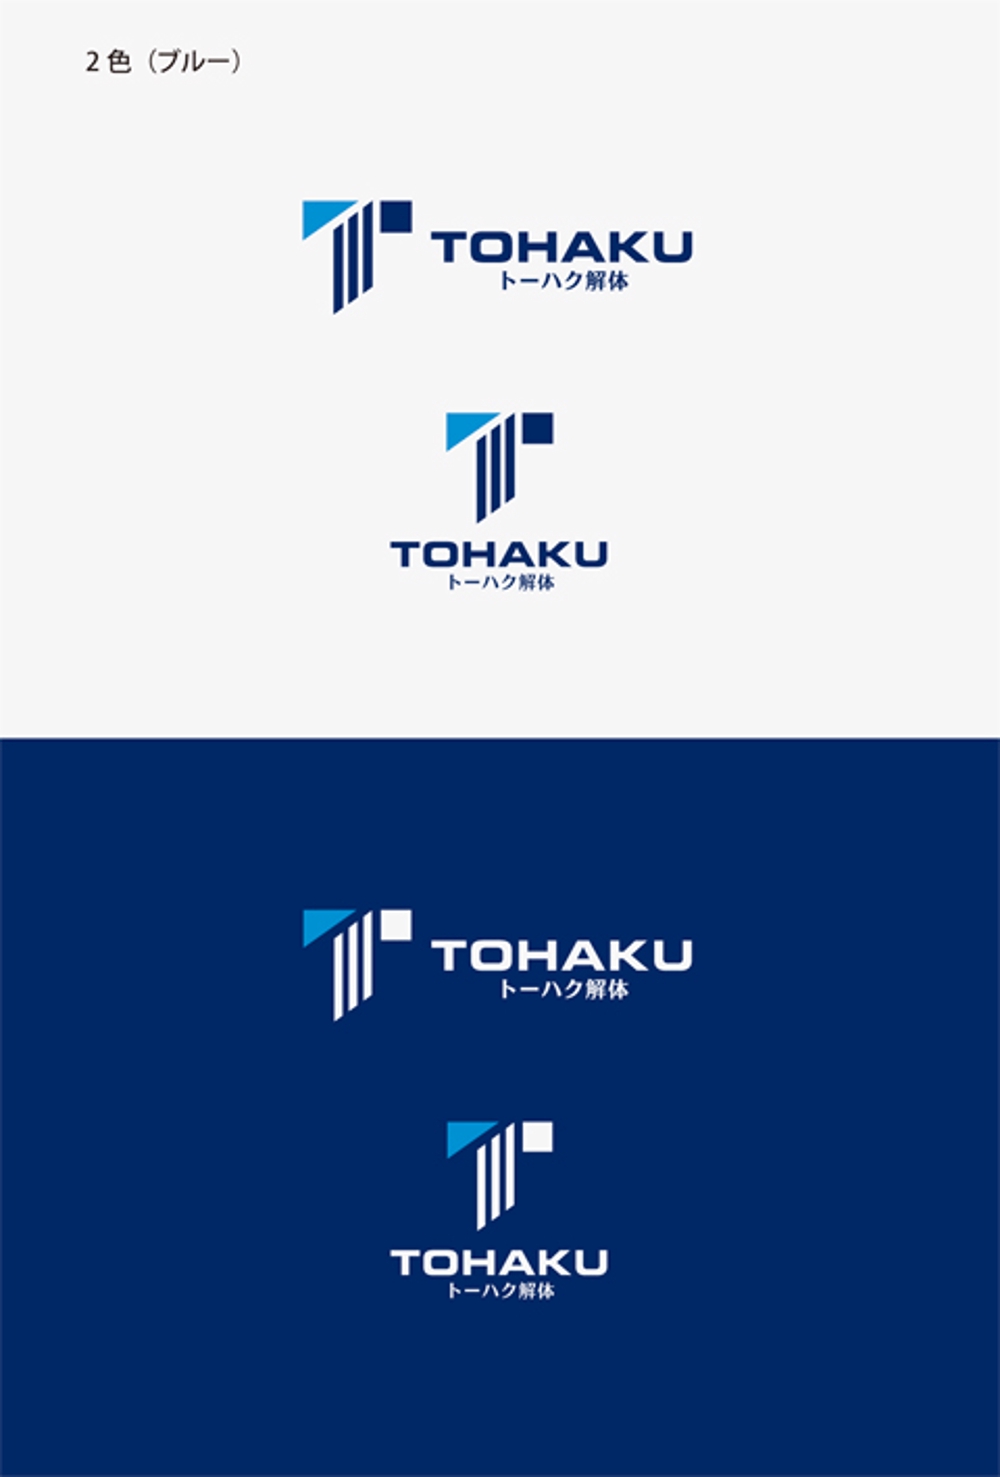 解体工事会社「トーハク解体」のロゴの作成